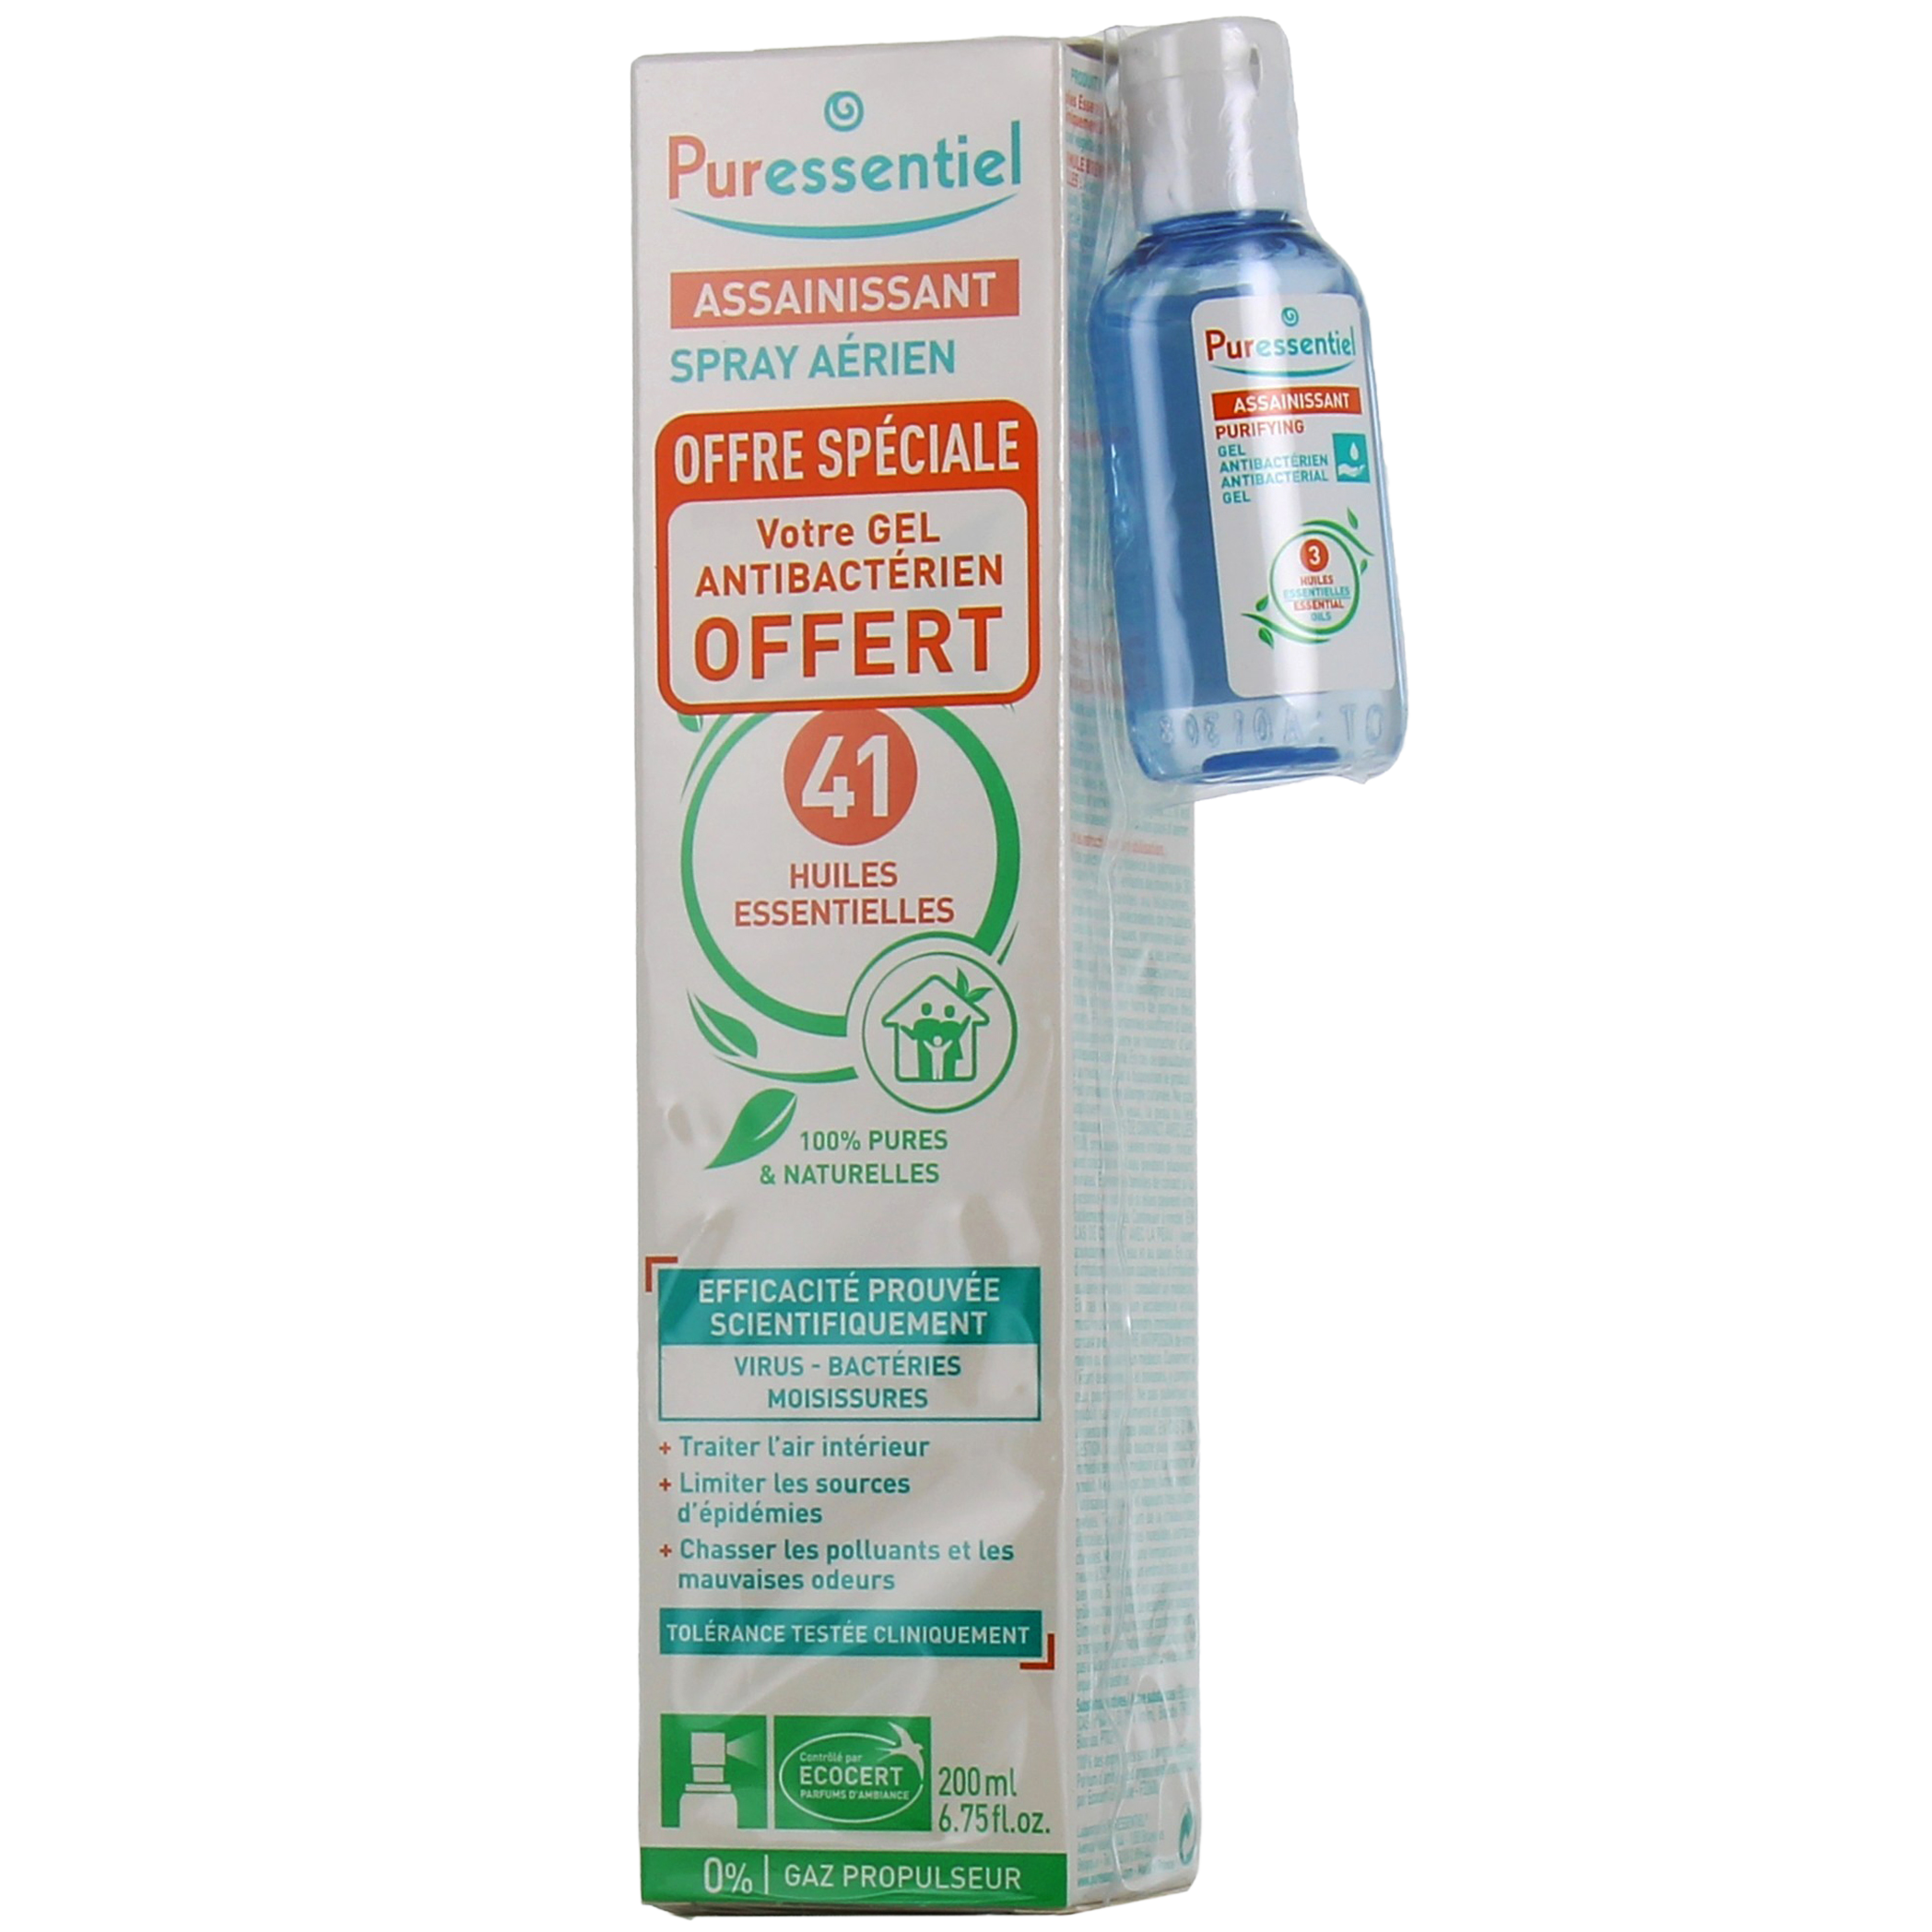 Puressentiel - Spray Aérien Assainissant aux 41 Huiles Essentielles -  Efficacité prouvée contre les virus, germes et bactéries - 200ml - réf 2